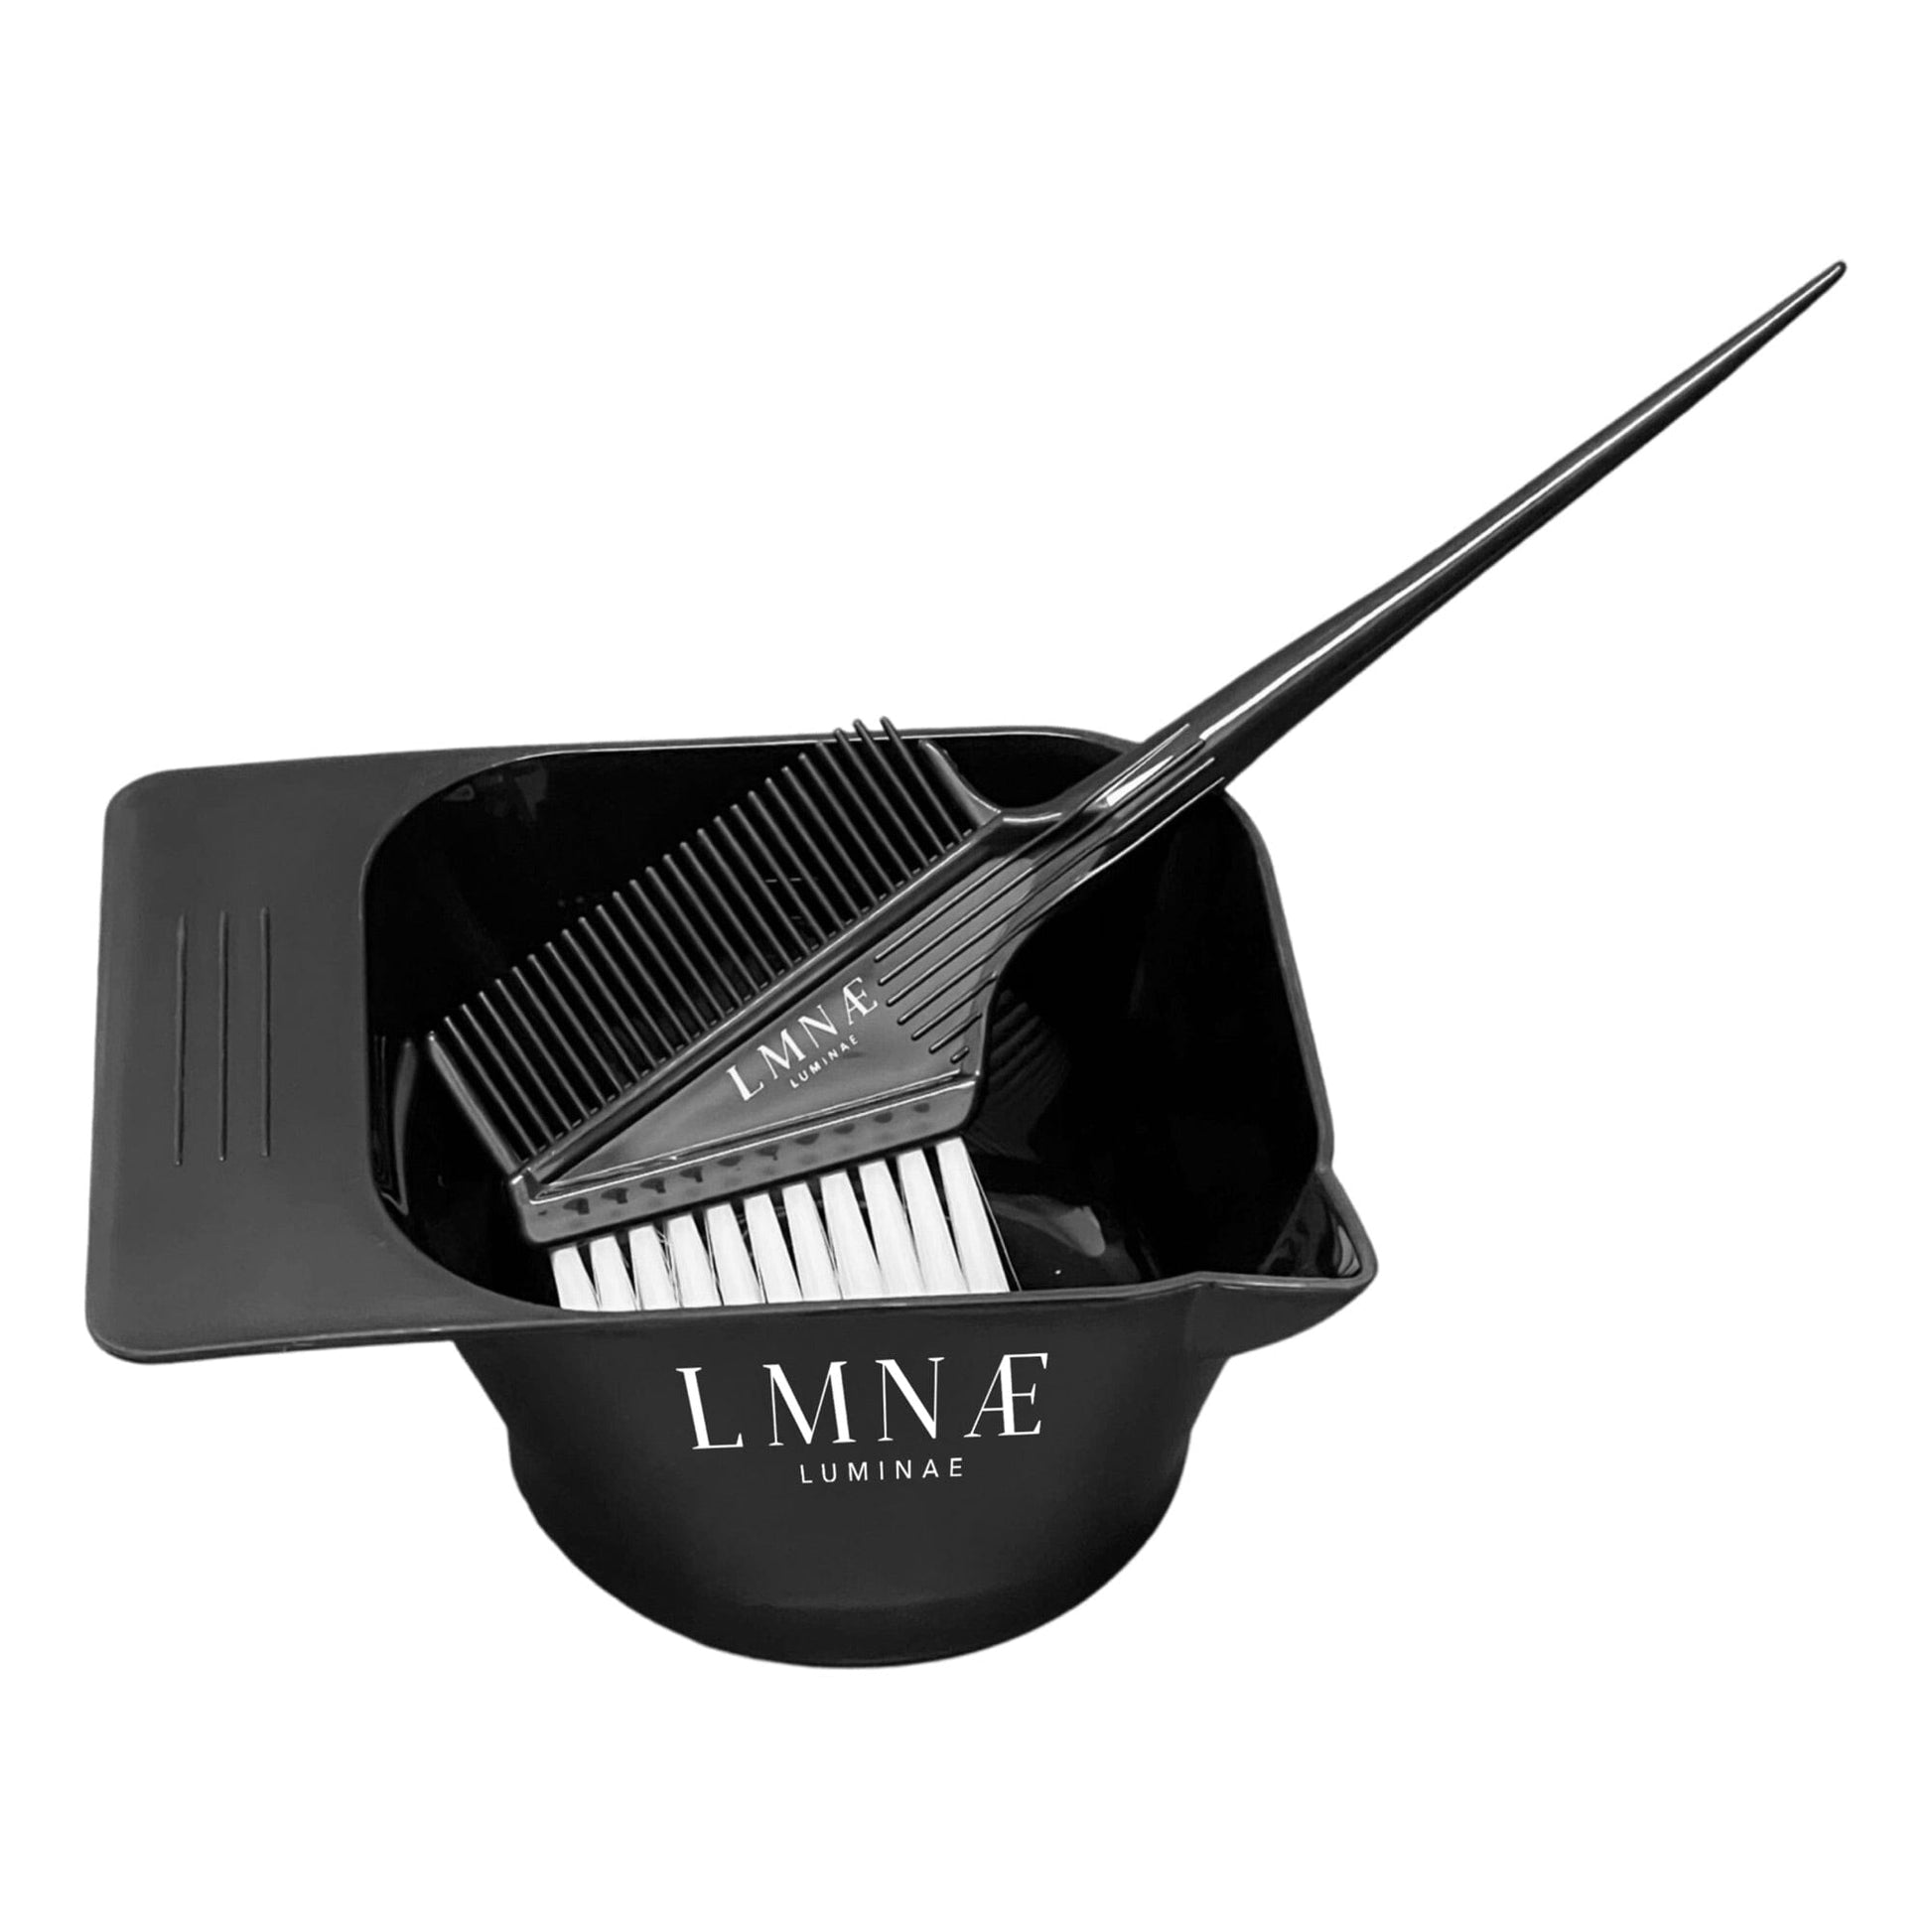 Comb / Brush Applicator | LUMINAE Applicator LUMINAE 